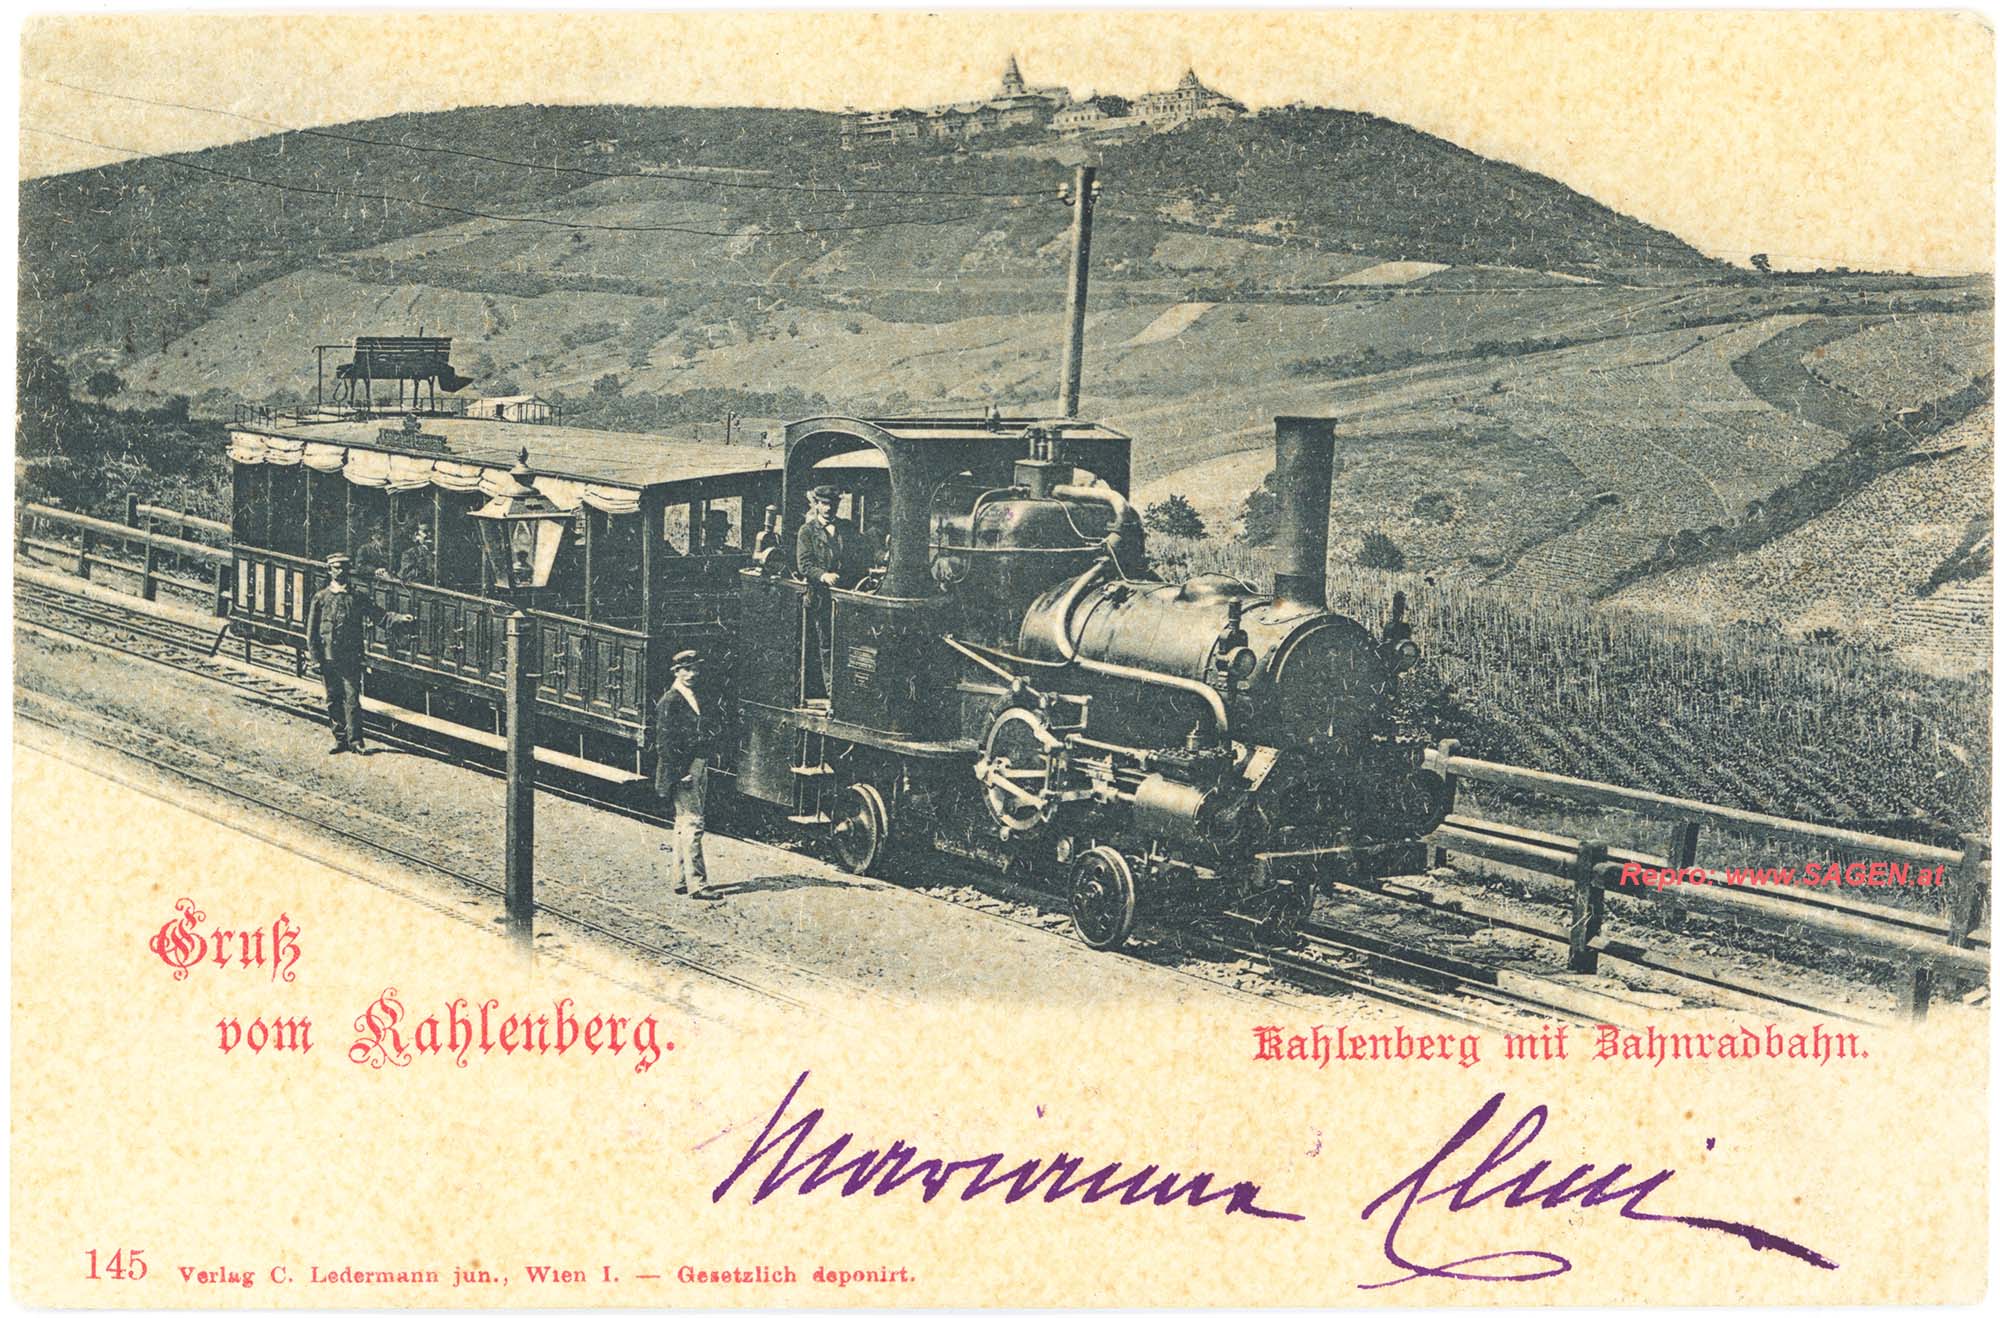 Kahlenberg mit Zahnradbahn